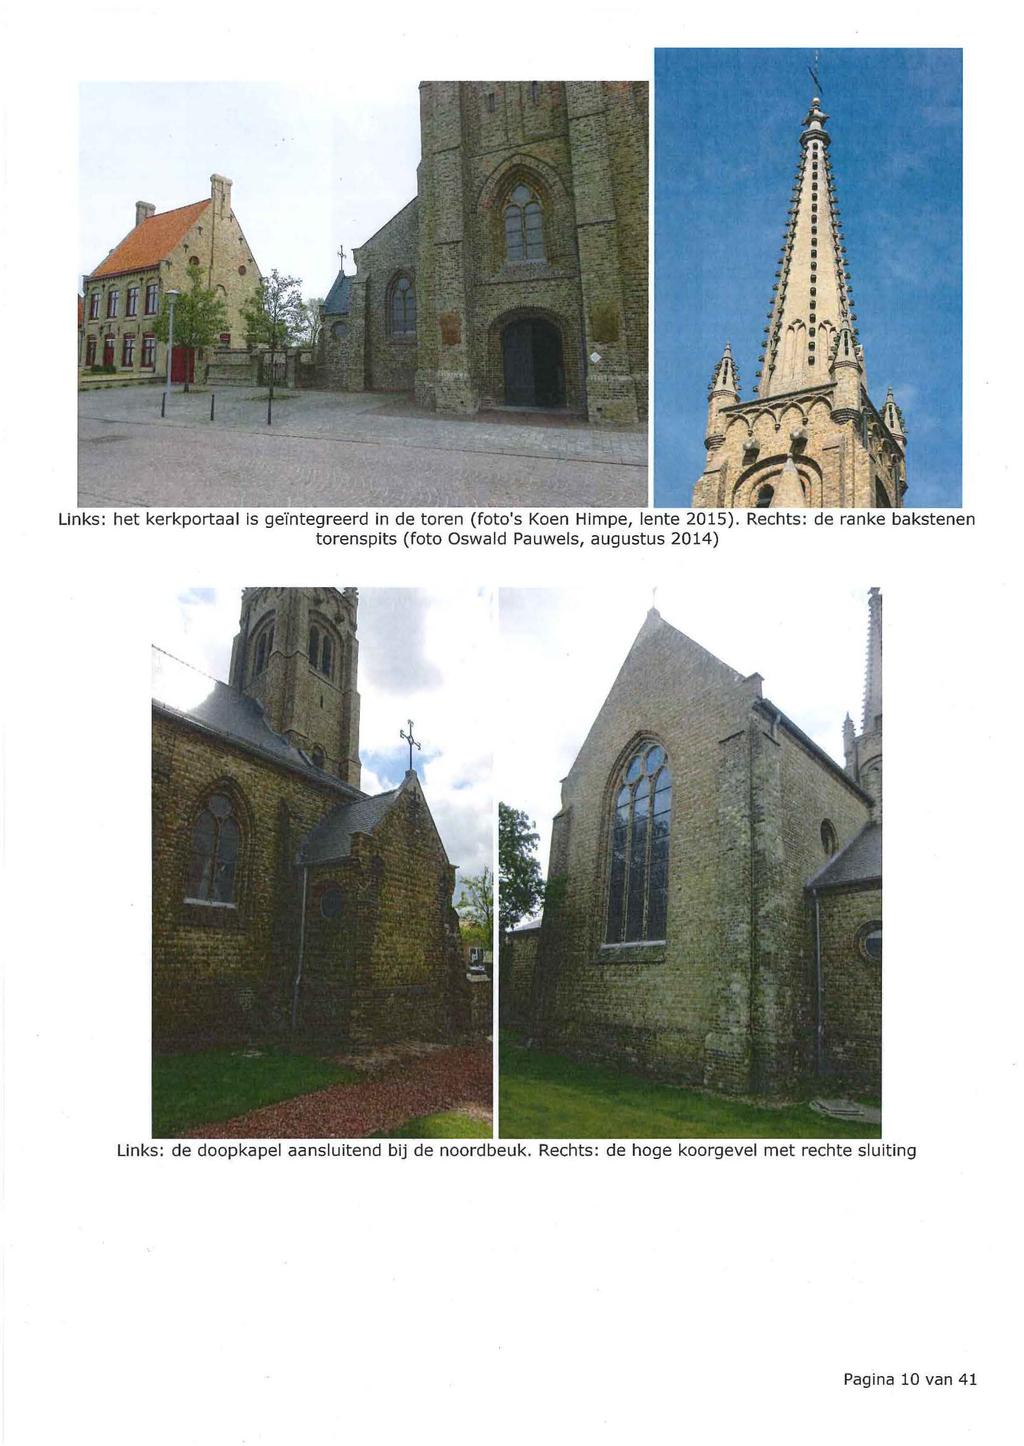 Links: het kerkportaal is geïntegreerd in de toren (foto's Koen Himpe, lente 2015).